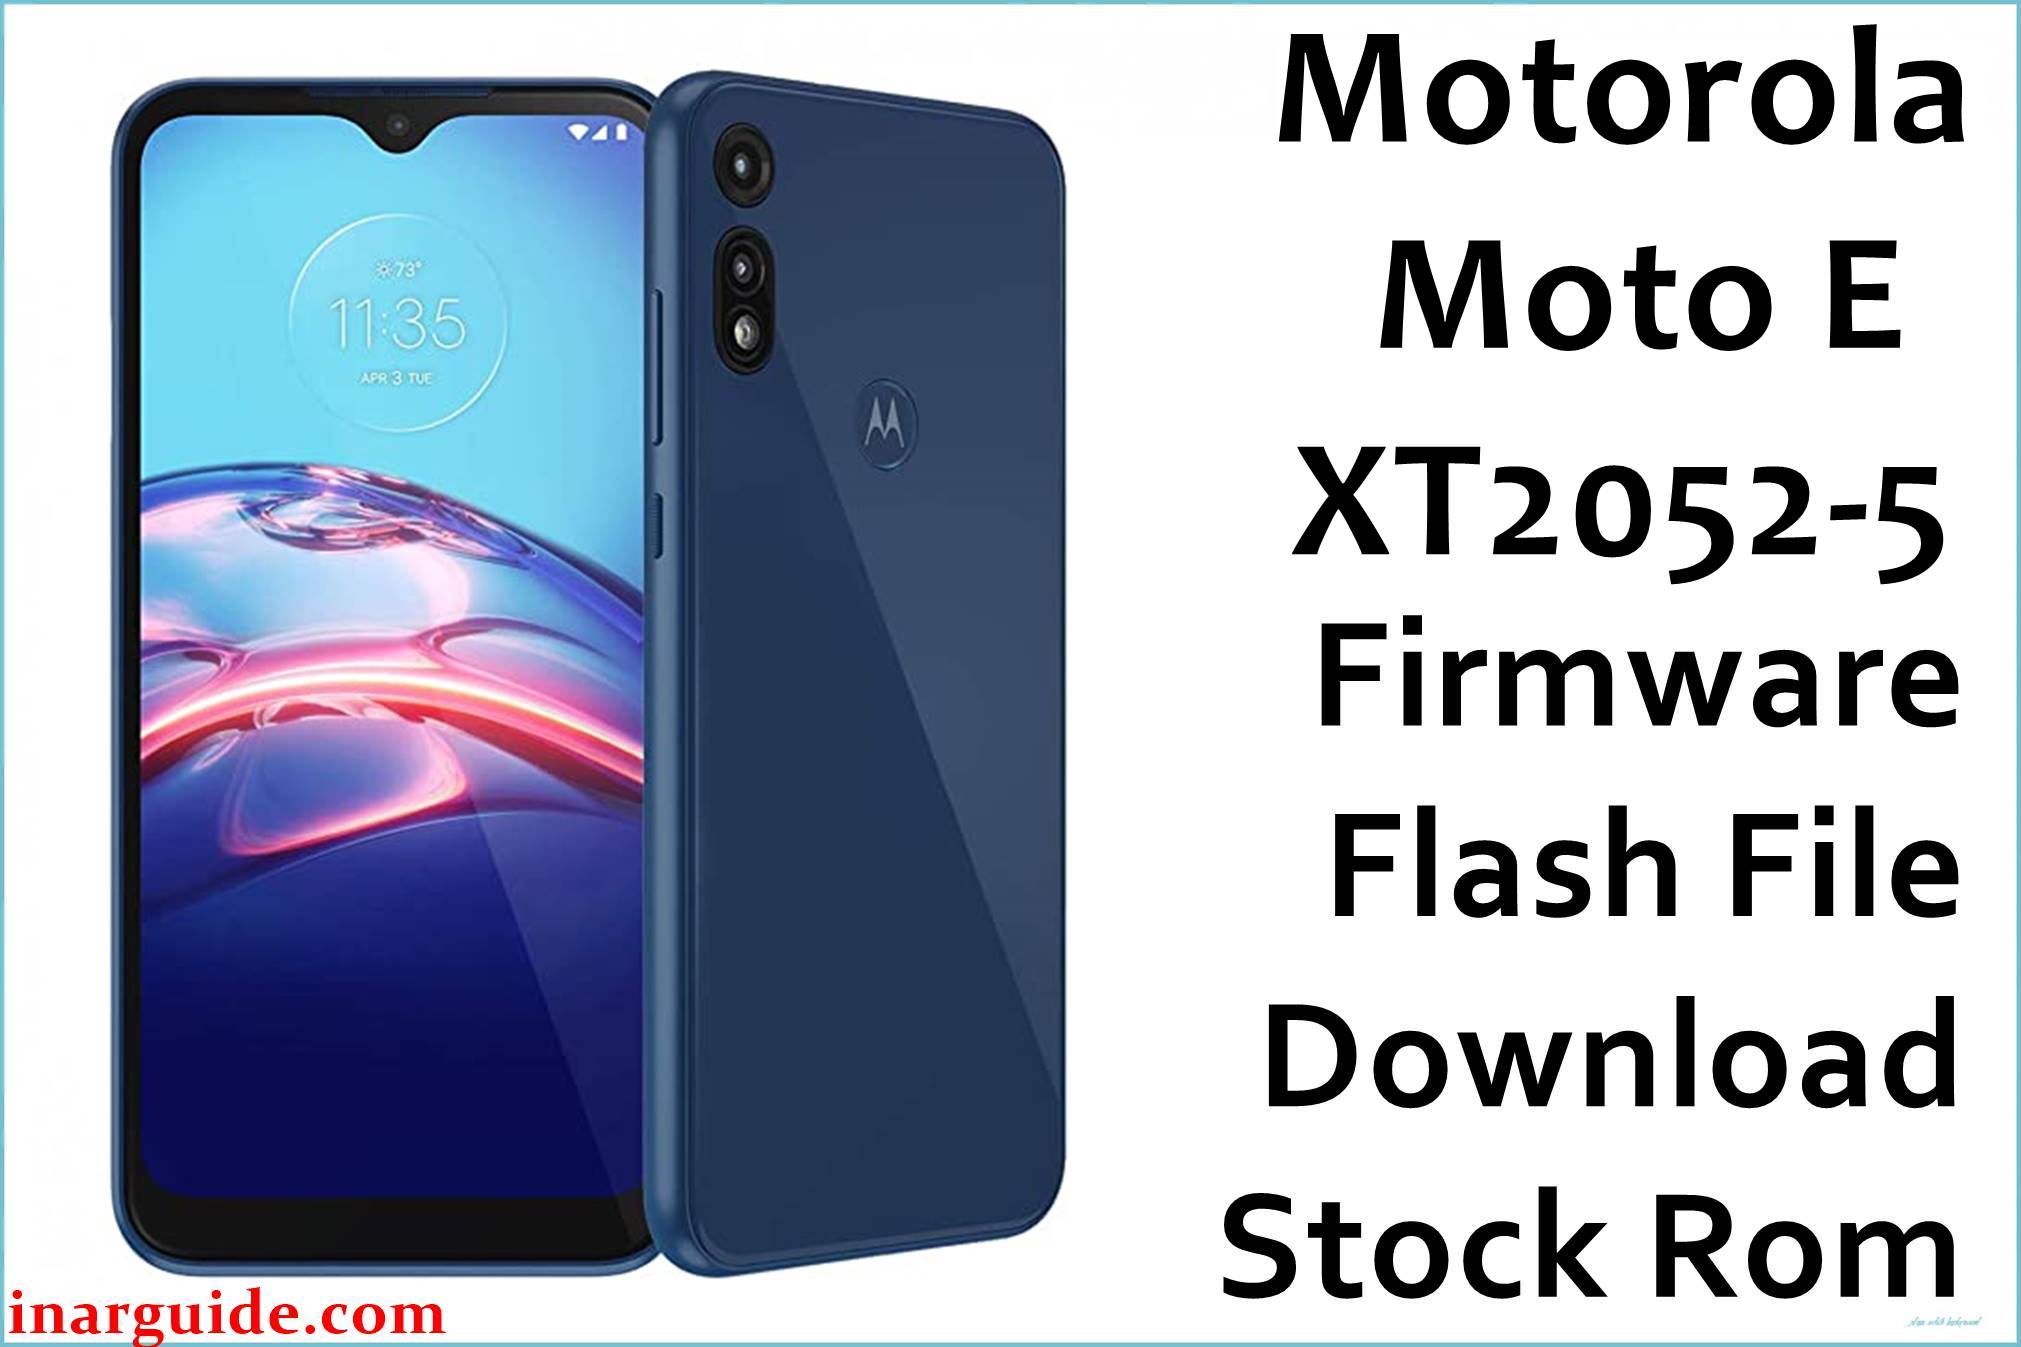 Motorola Moto E XT2052-5